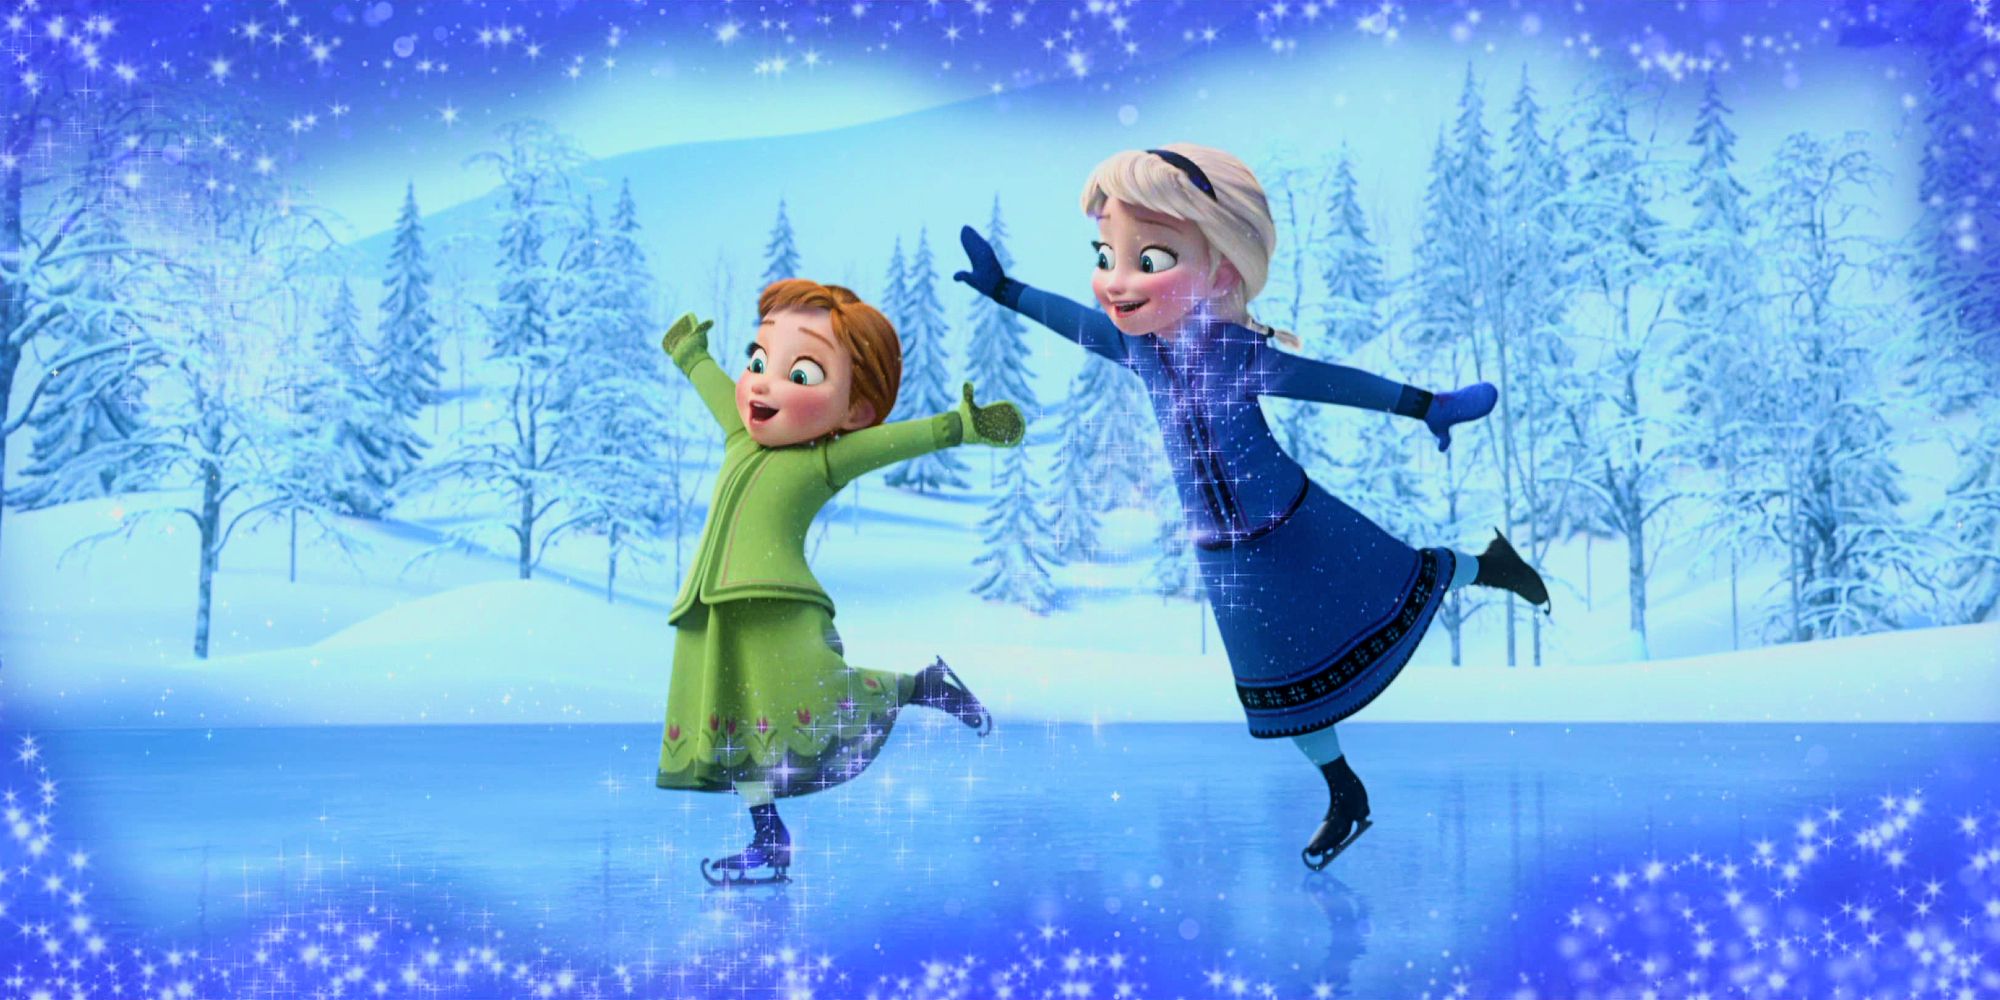 La actriz de doblaje Anna de Frozen comparte un sentido homenaje lleno de fotografías mientras la película de Disney alcanza su décimo aniversario